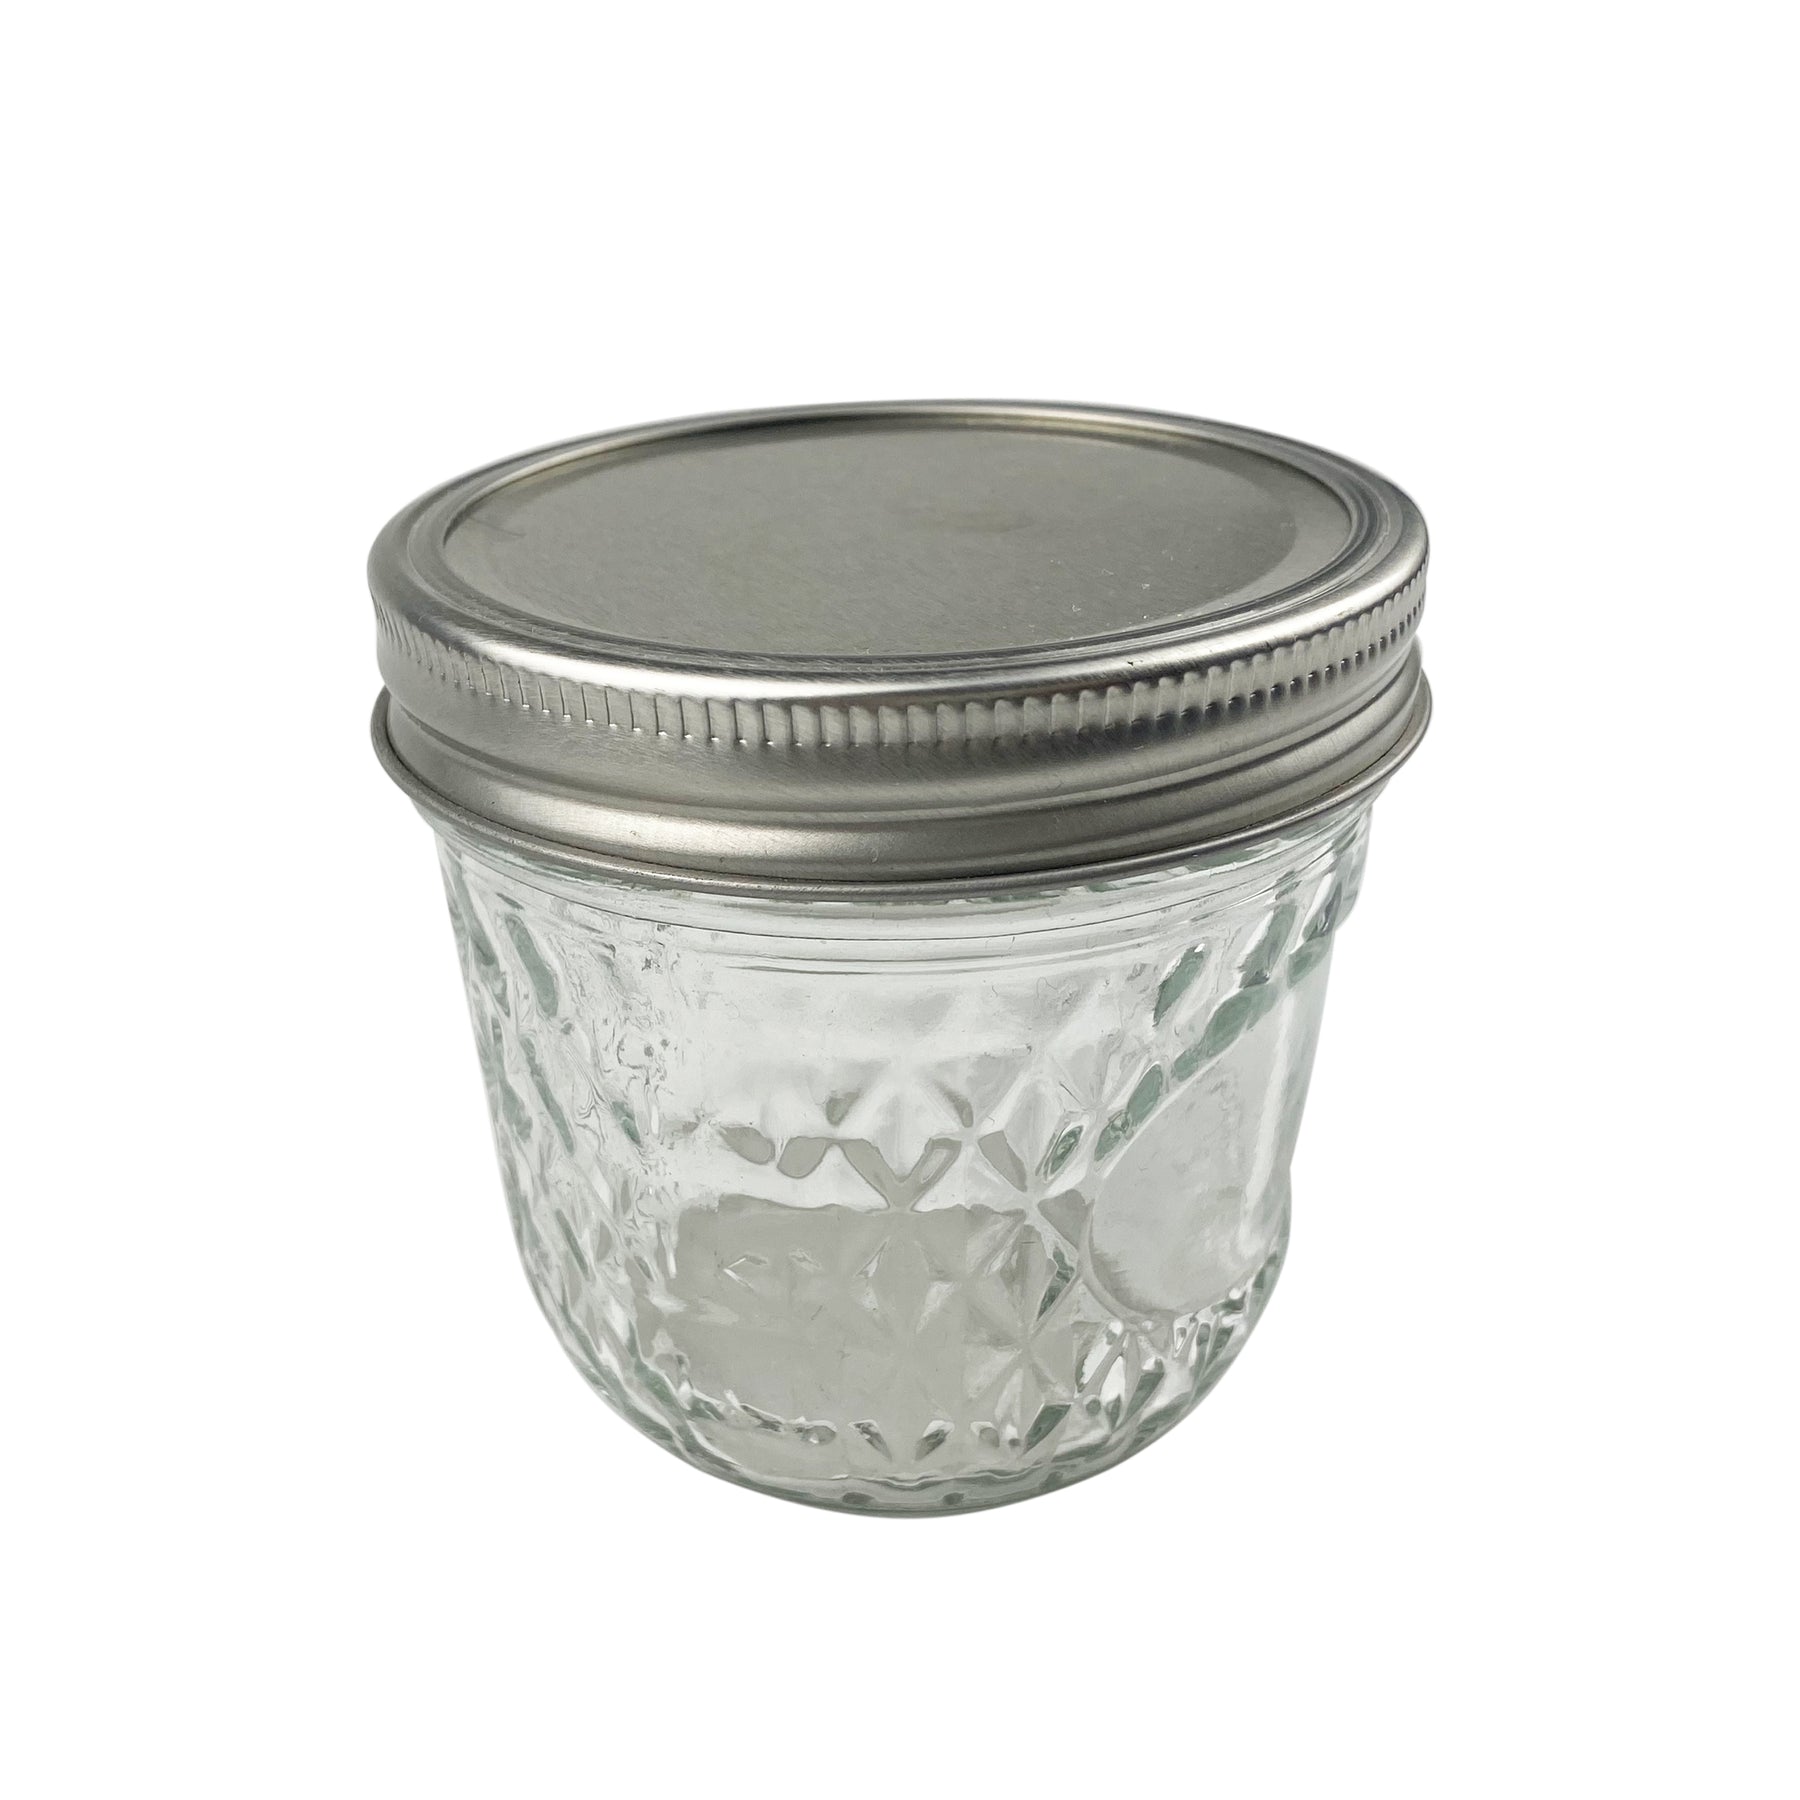 Small Glass Mason Jars, 8 oz Glass Jar with Lid 30 Pack,Half Pint